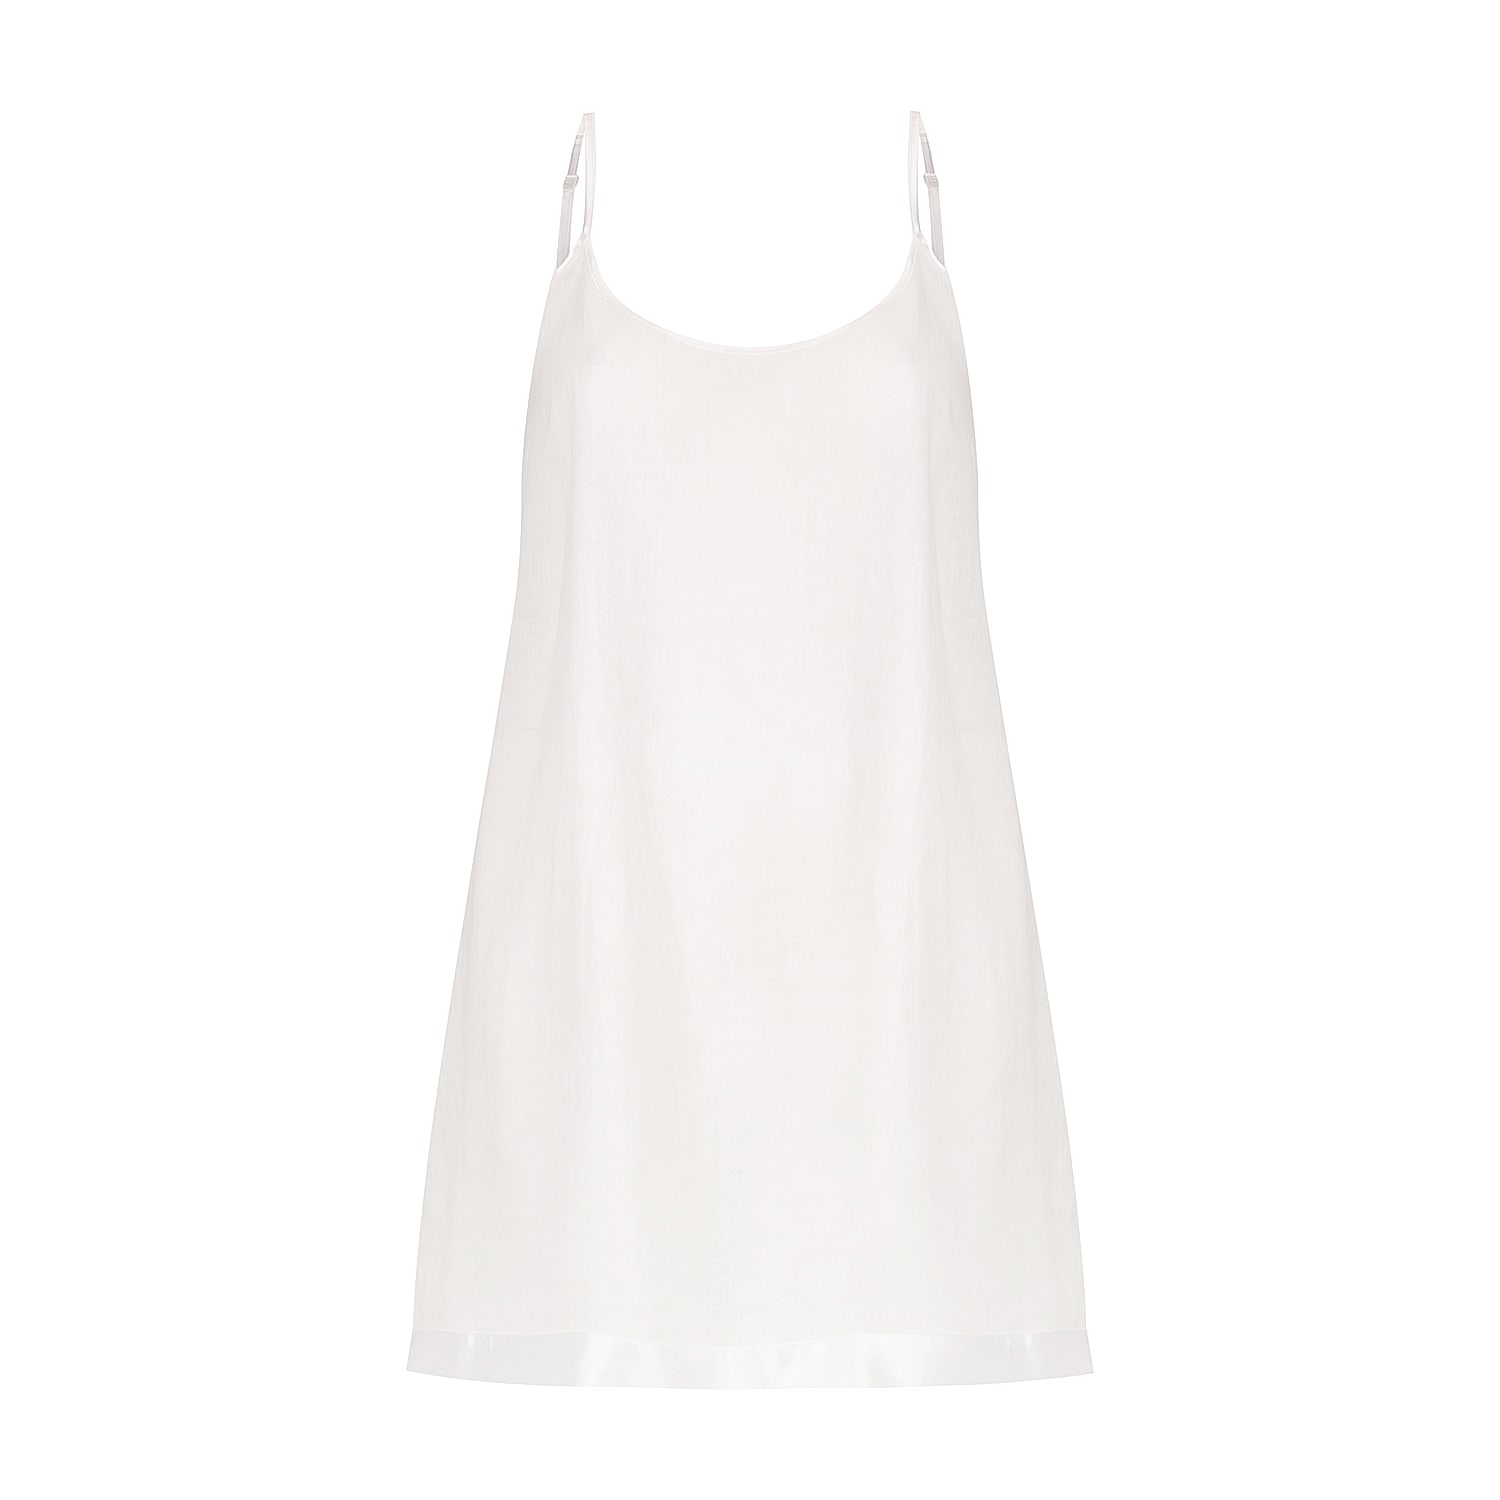 Hank & Hera Women's Renae Slip Nightdress - Short - White